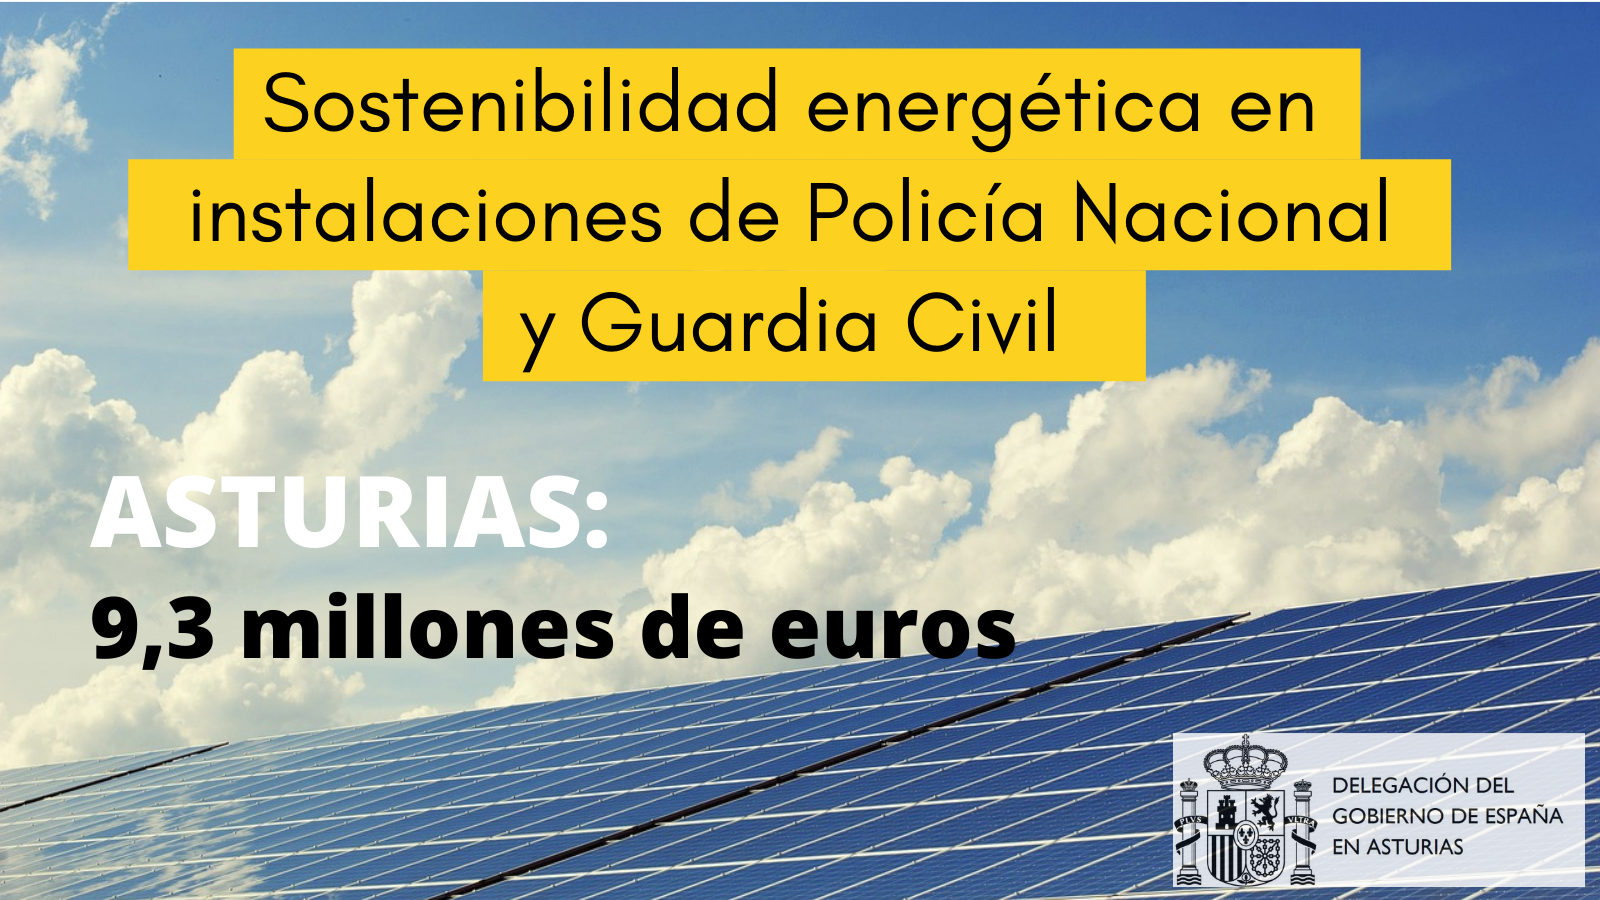 El Gobierno invierte 9,3 millones de euros en Asturias para sostenibilidad energética en instalaciones de Guardia Civil y Policía Nacional